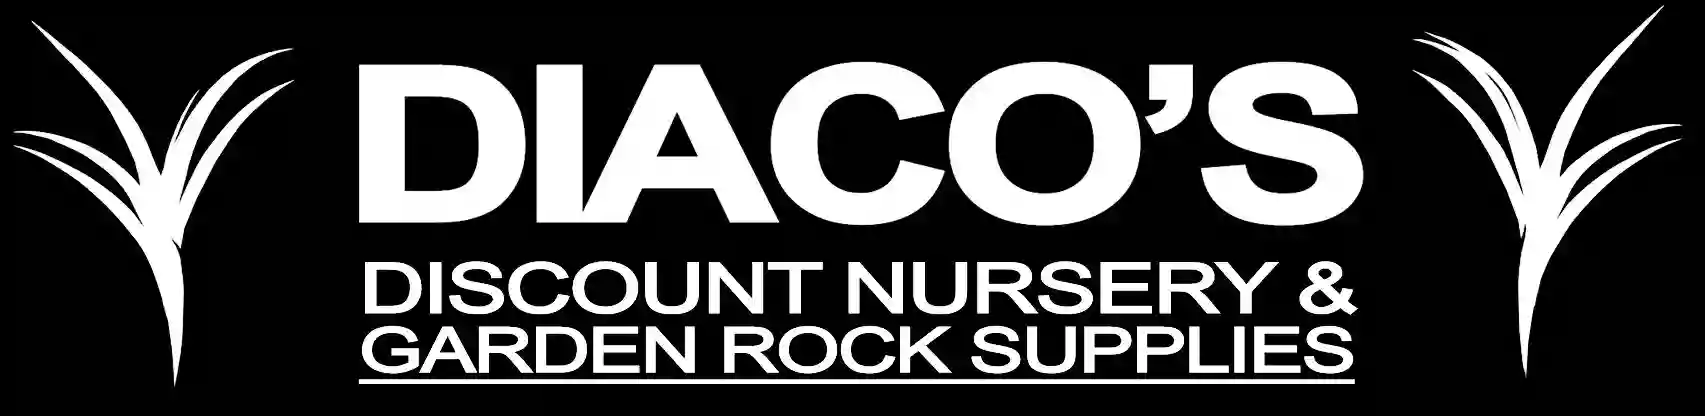 Diaco's Discount Nursery and Garden Rock Supplies